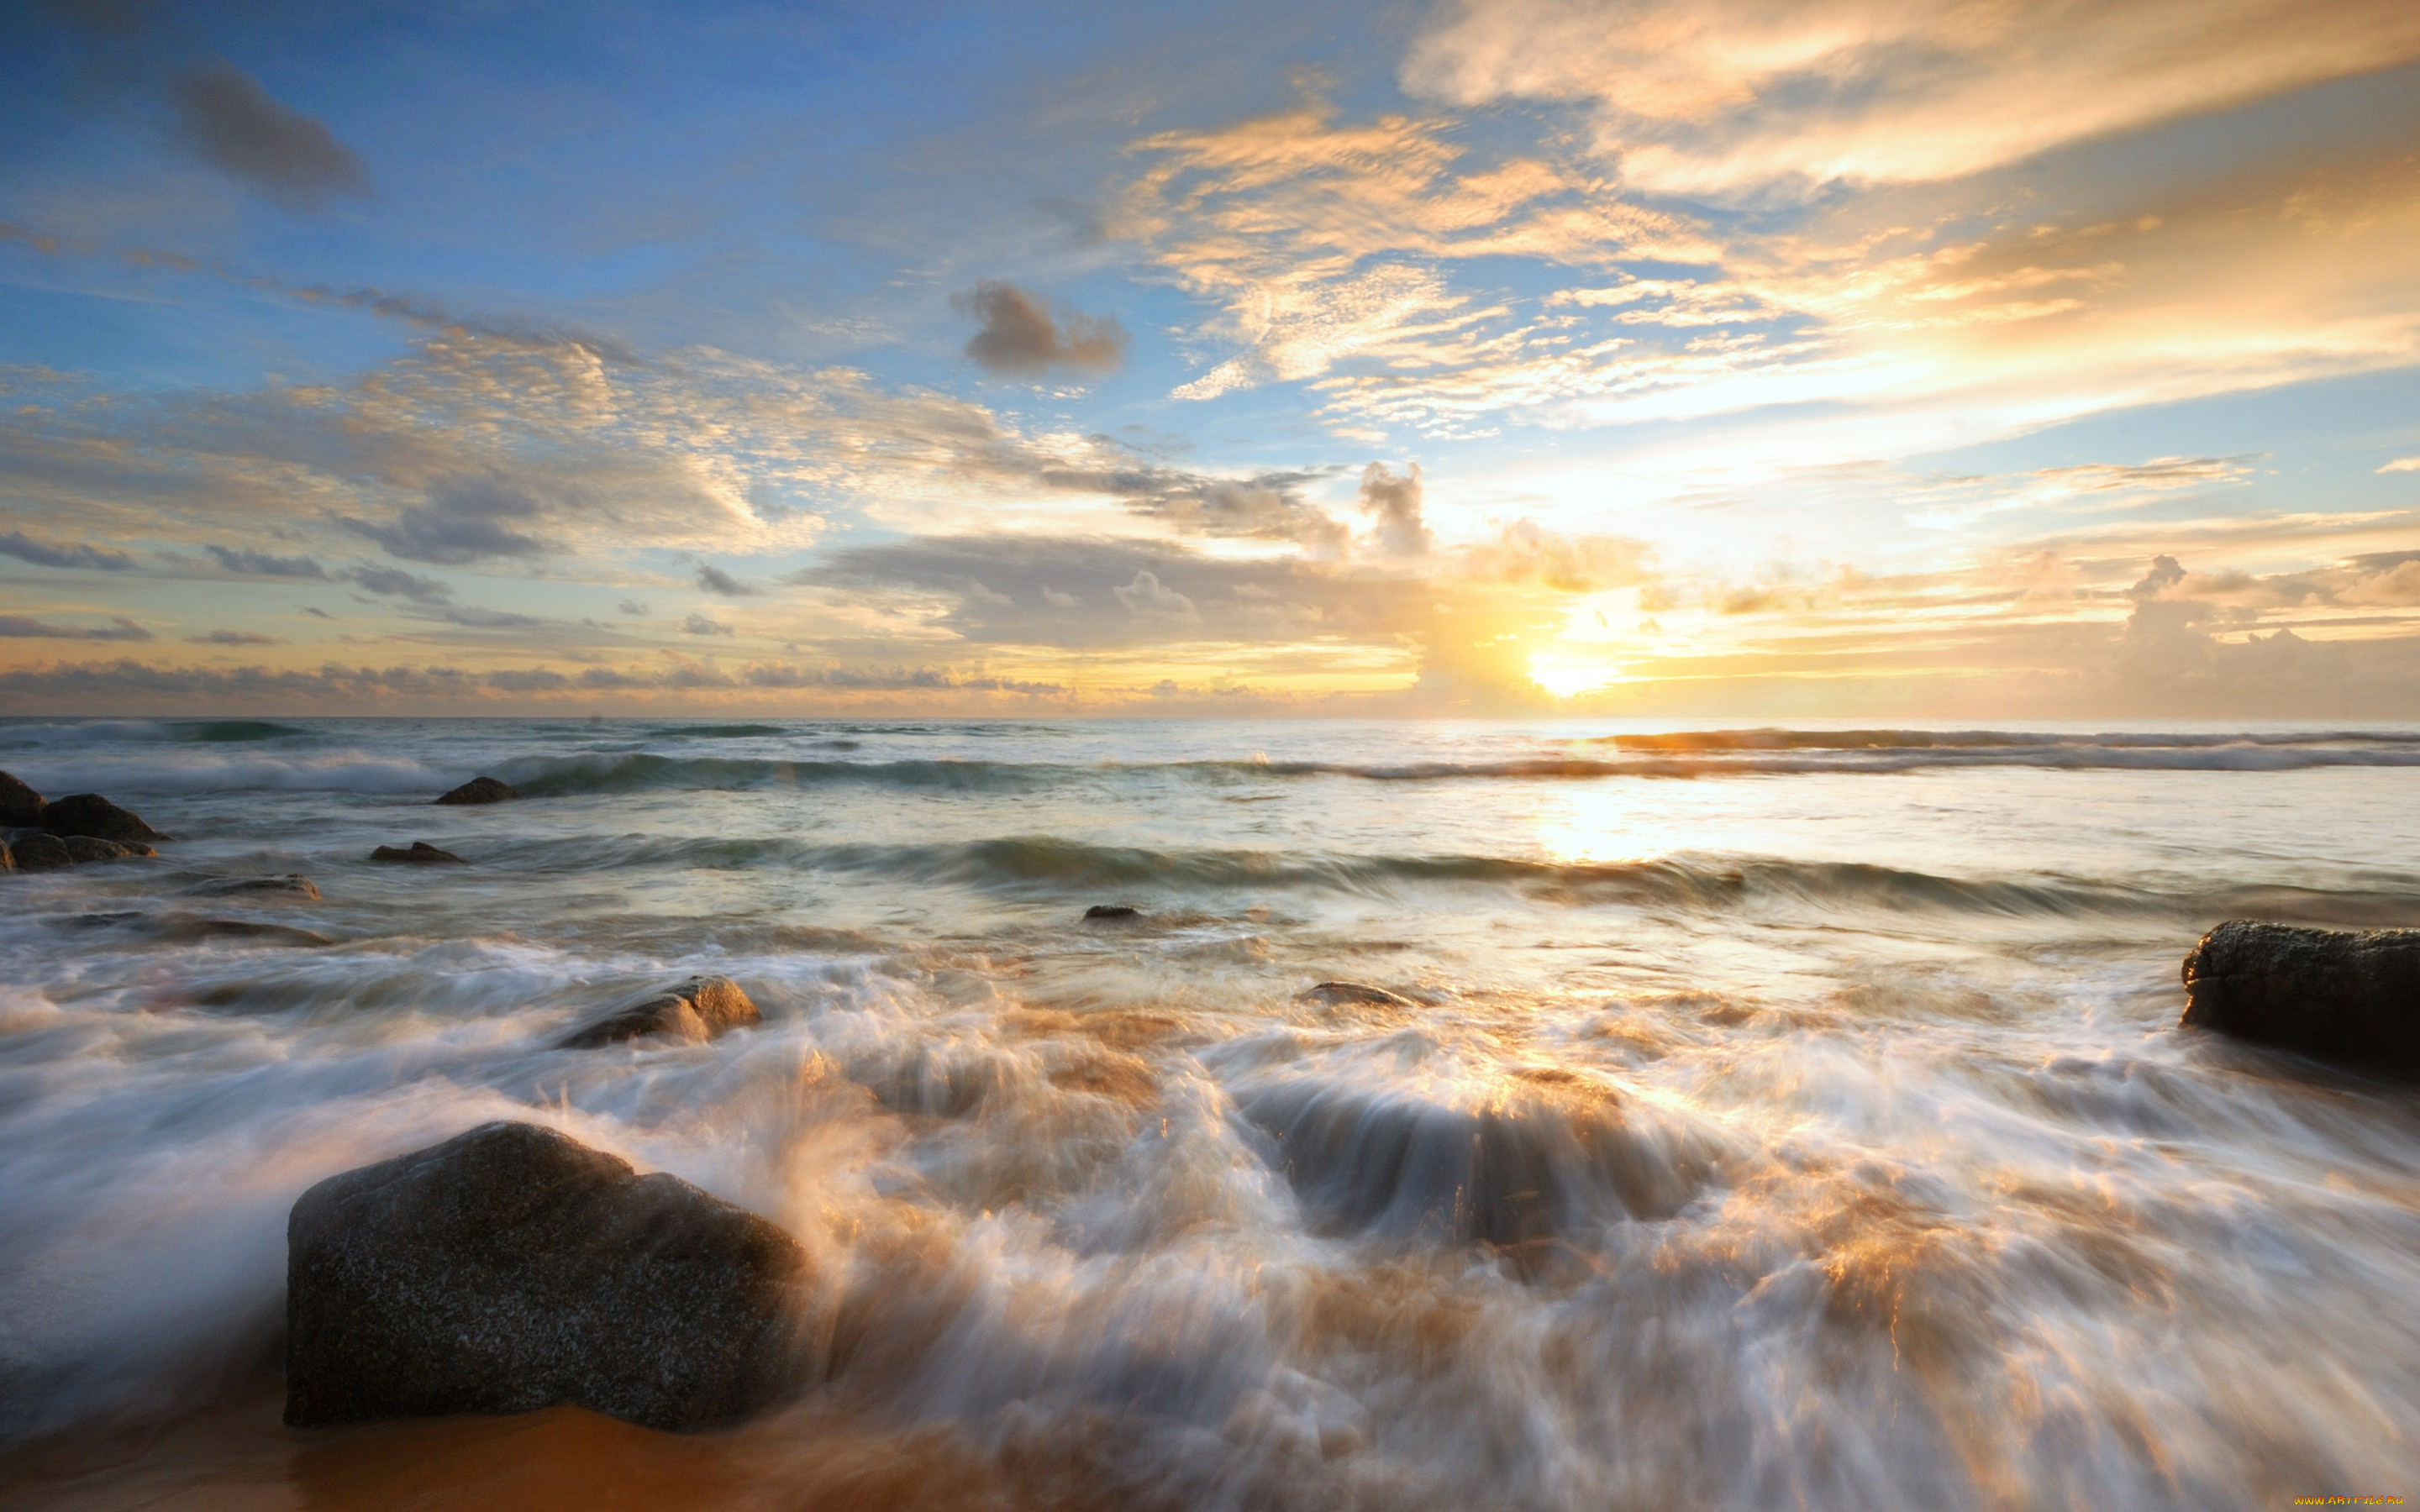 природа, моря, океаны, summer, лето, wave, sea, пляж, beautiful, камни, закат, beach, песок, море, sand, sunset, волны, seascape